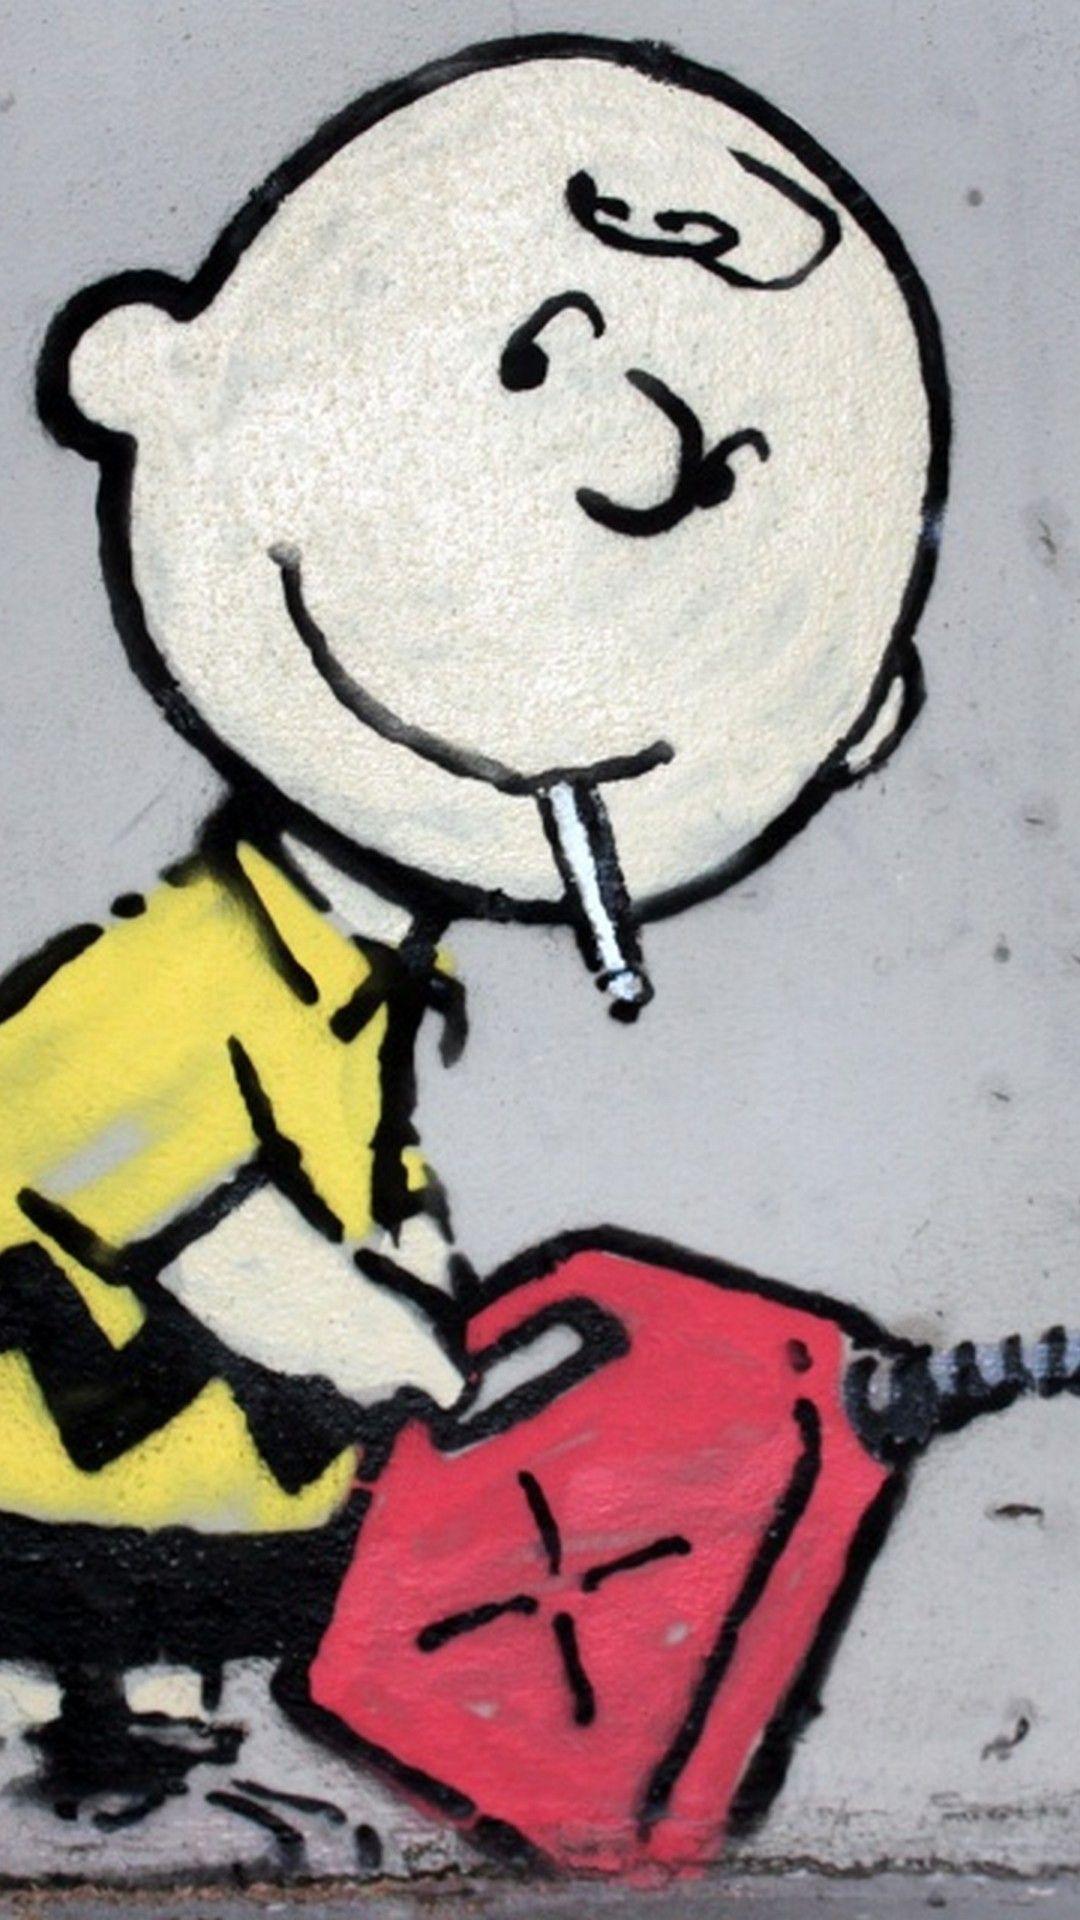 Cartoon Graffiti Art Wallpapers - Top Free Cartoon Graffiti Art